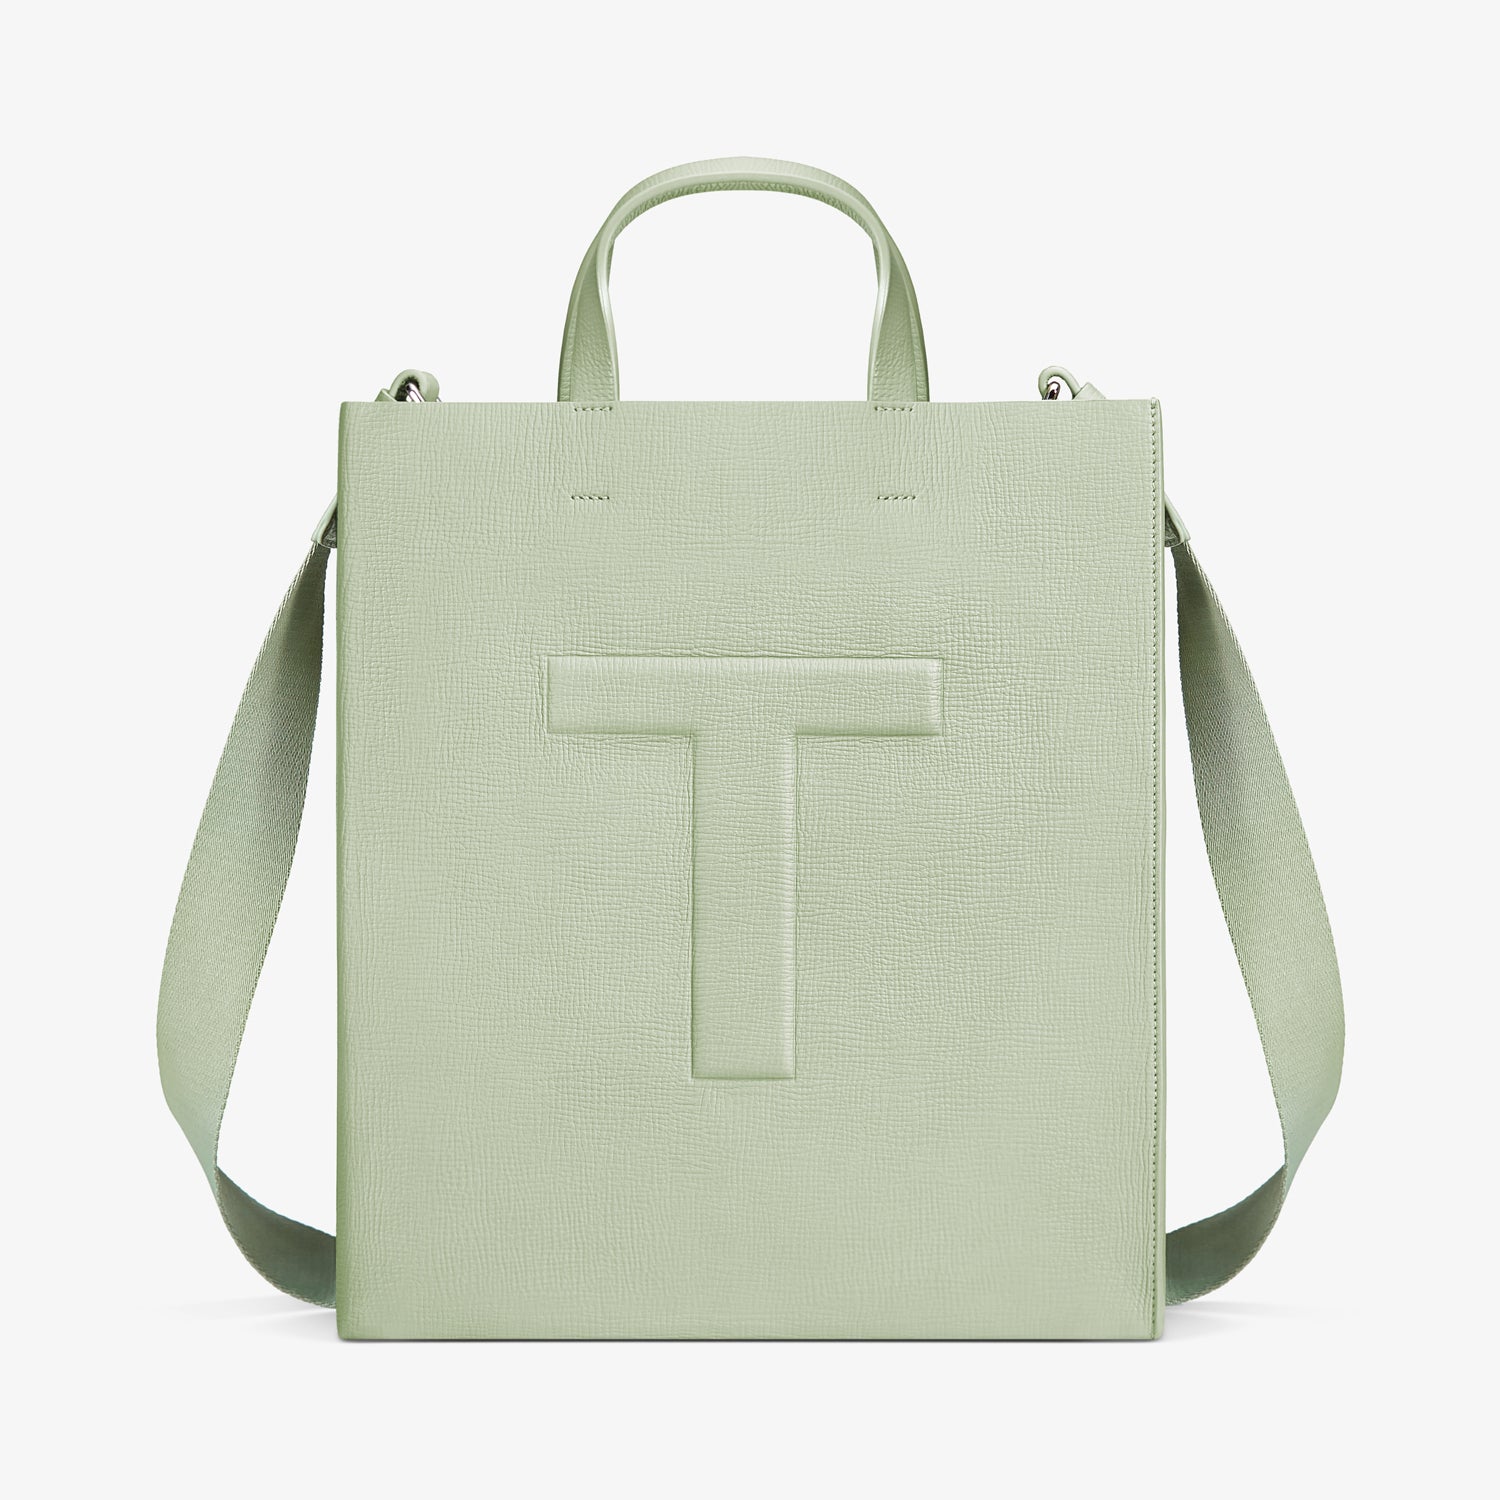 TUPLUS Travel Pro Tote Bag